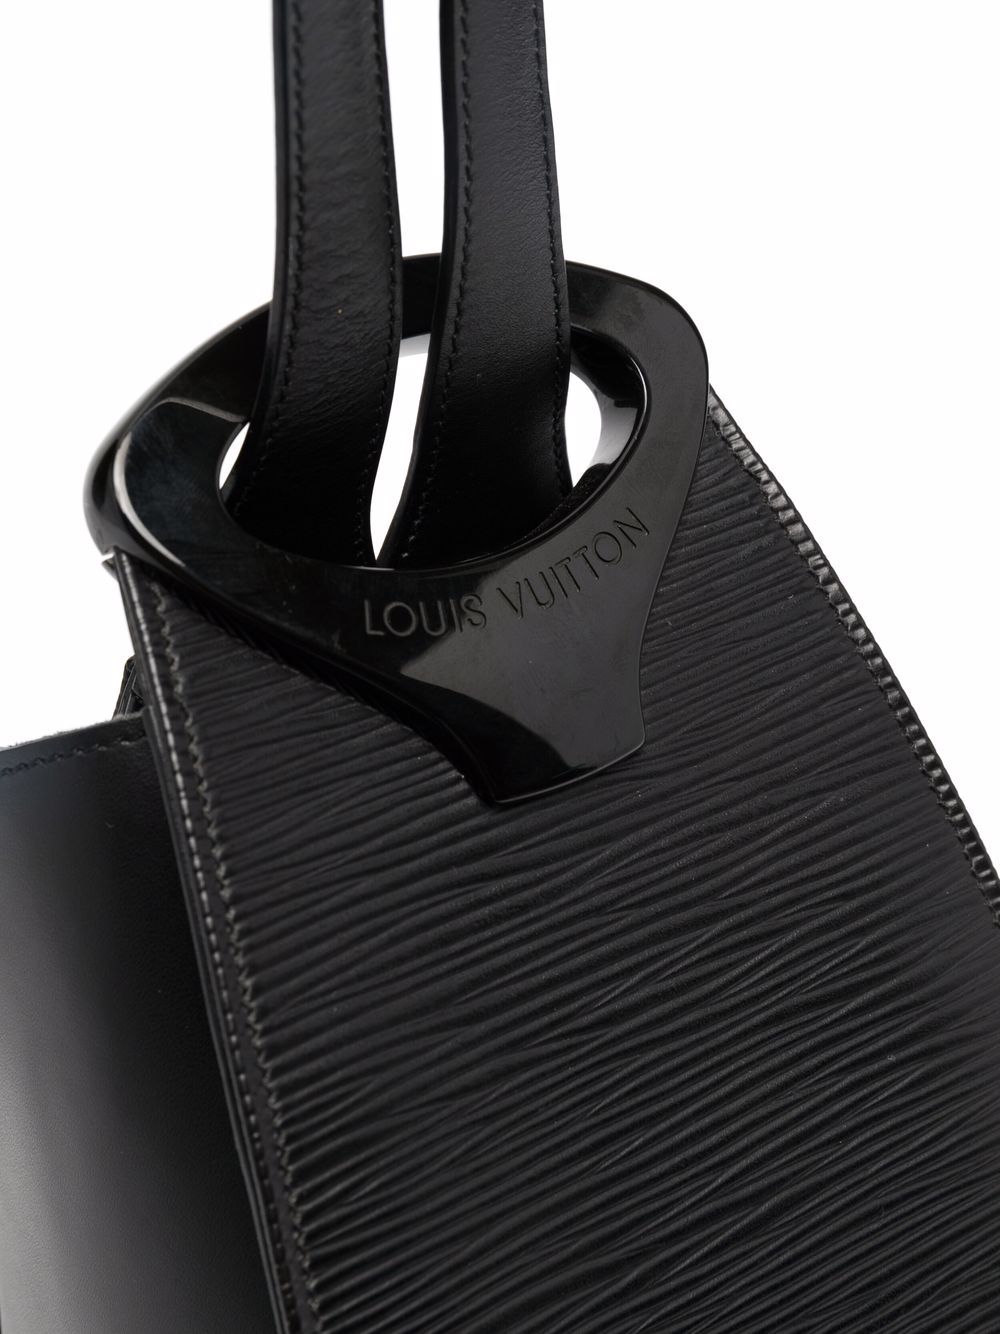 Louis Vuitton Noctambule Black Leather Handbag (Pre-Owned)